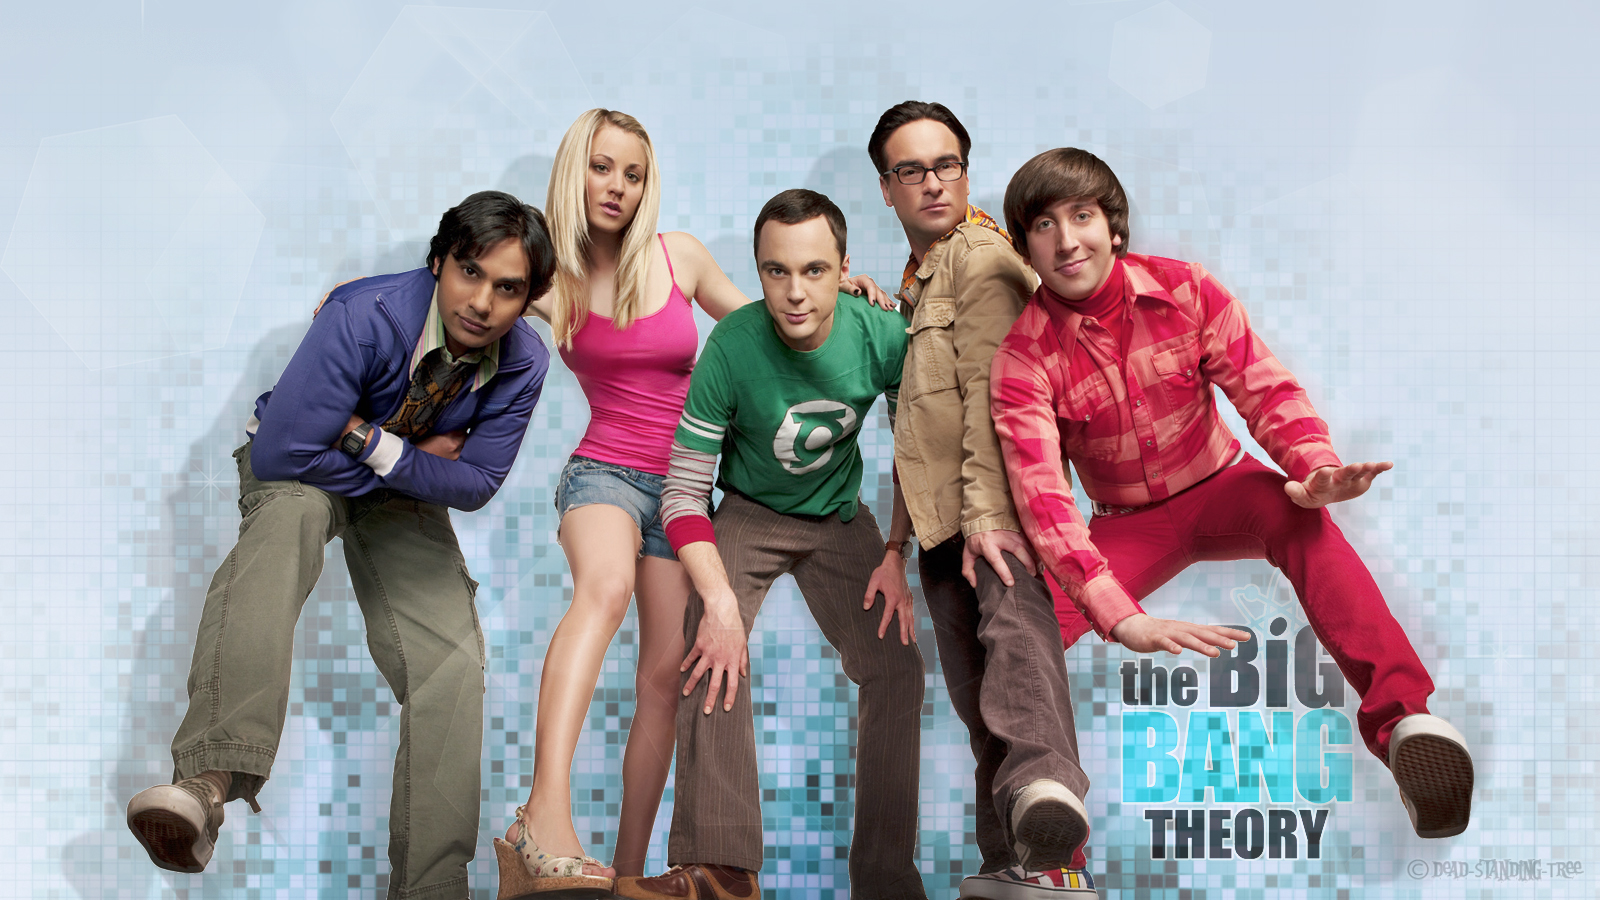 Fondos de pantalla de la serie The Big Bang Theory, Wallpapers